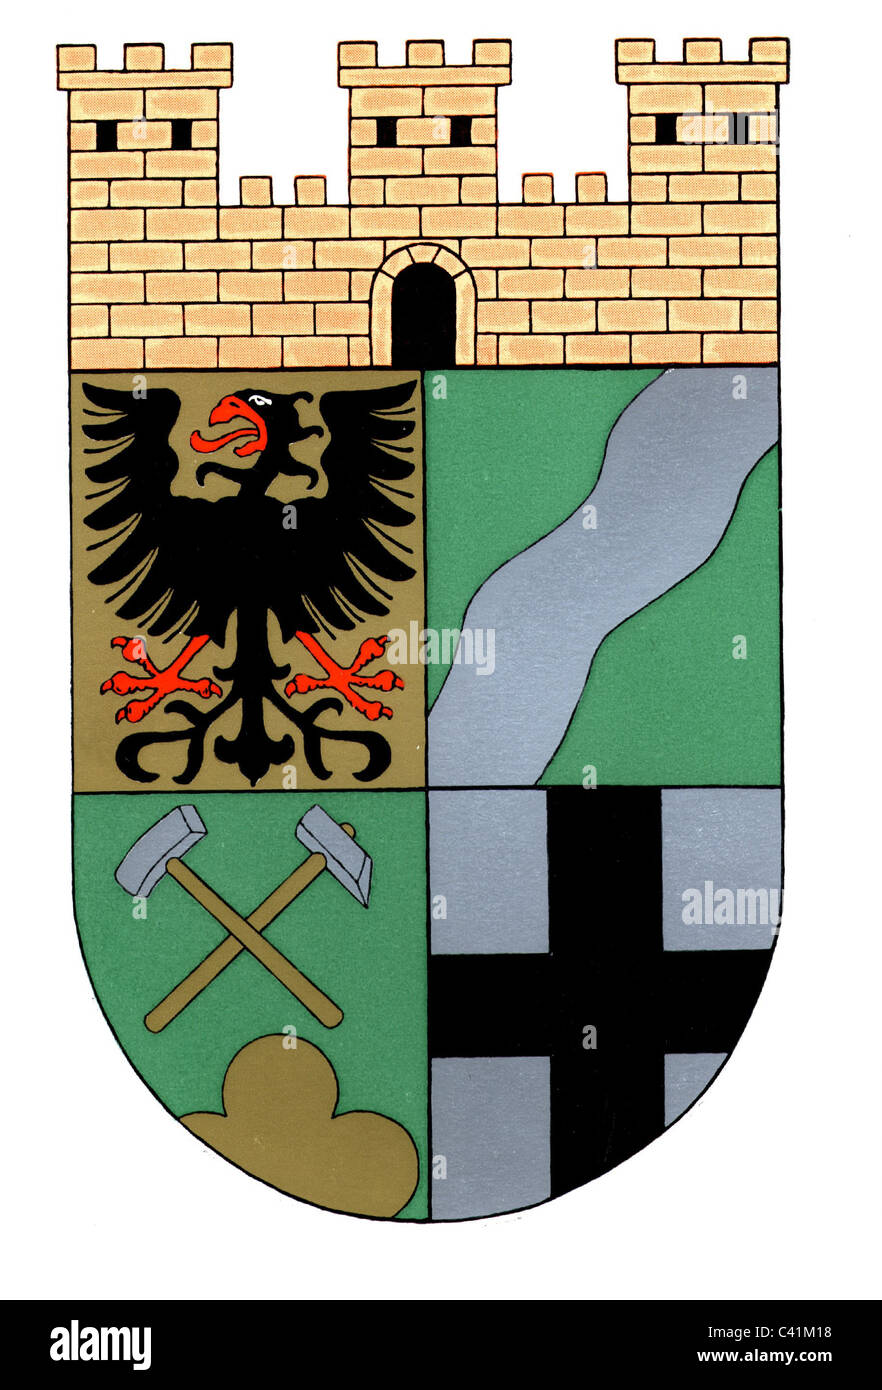 Wappen / Embleme, Würselen, Stadtwappen, Nordrhein-Westfalen, Deutschland, Zusatz-Rechteklärung-nicht lieferbar Stockfoto